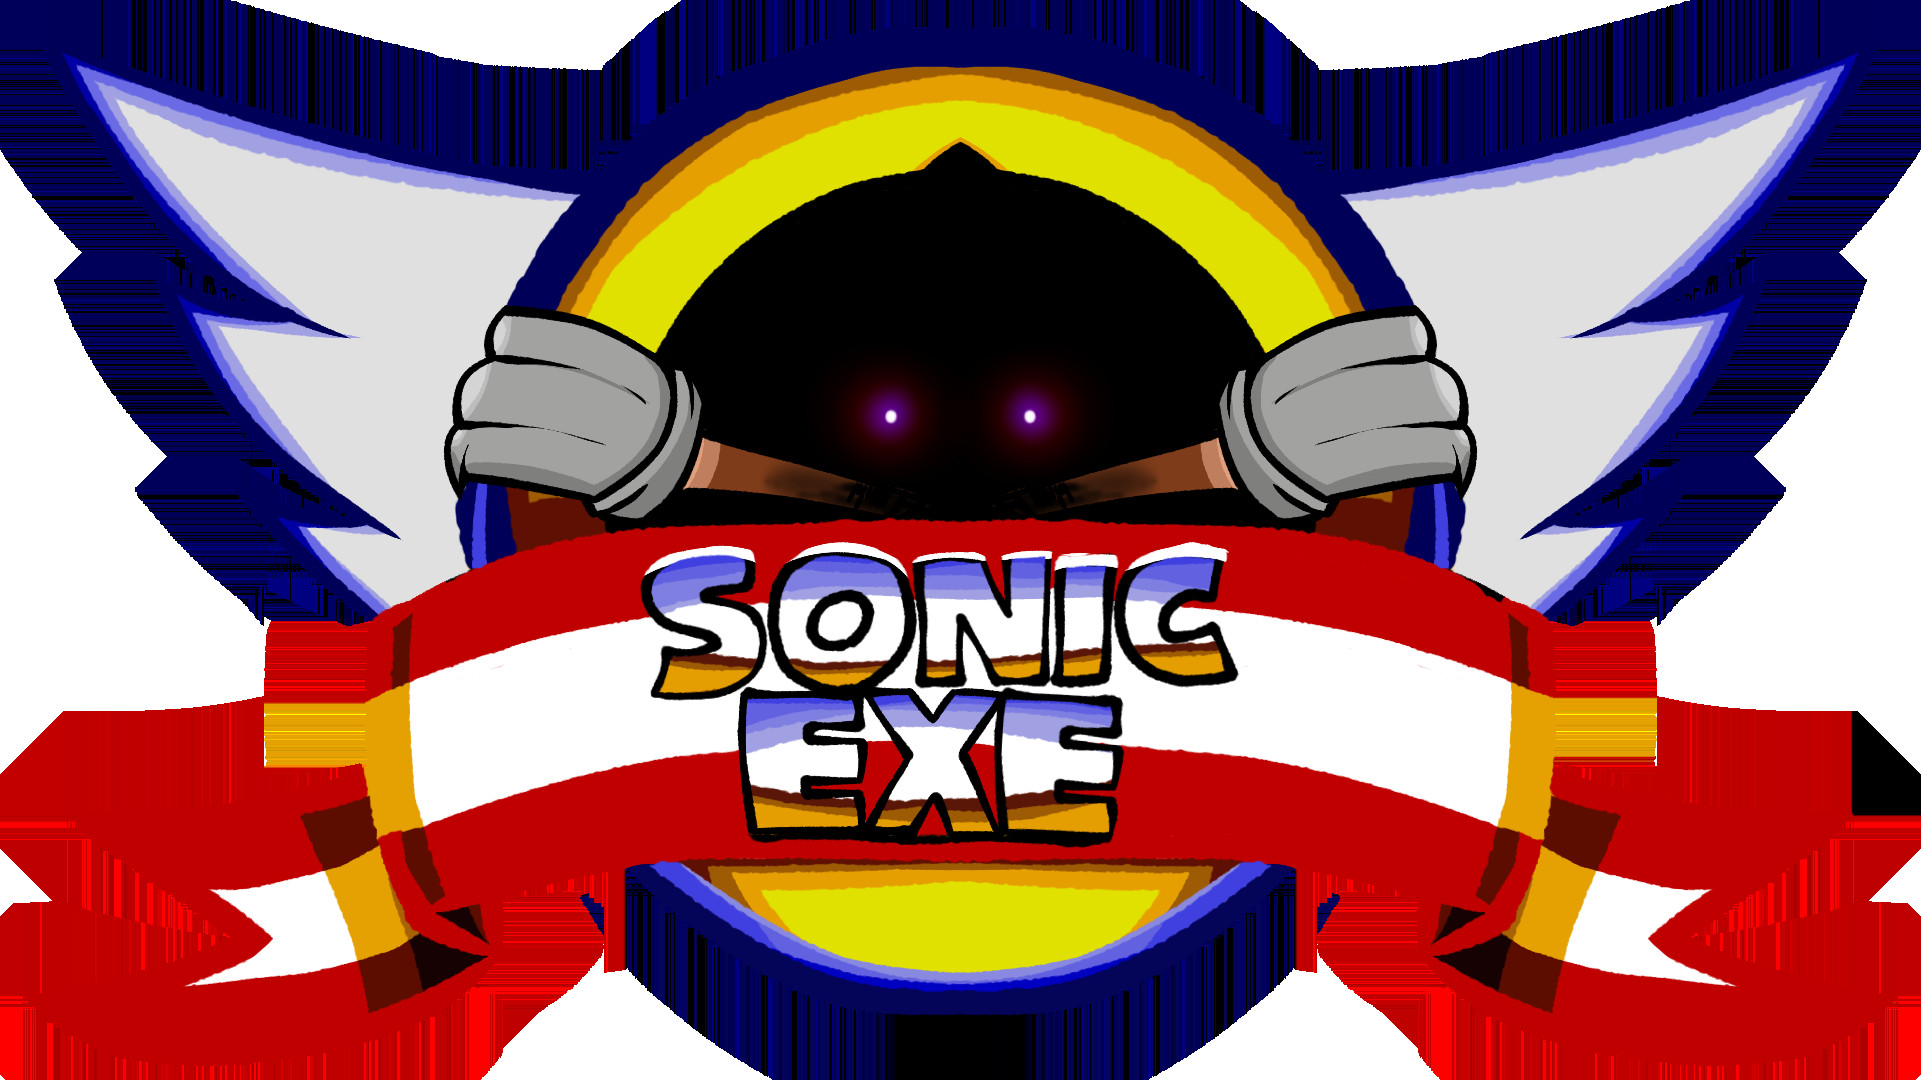 FNF' Vs Sonic.exe 2.0 - Faker+Black Sun (Original VS Redesign